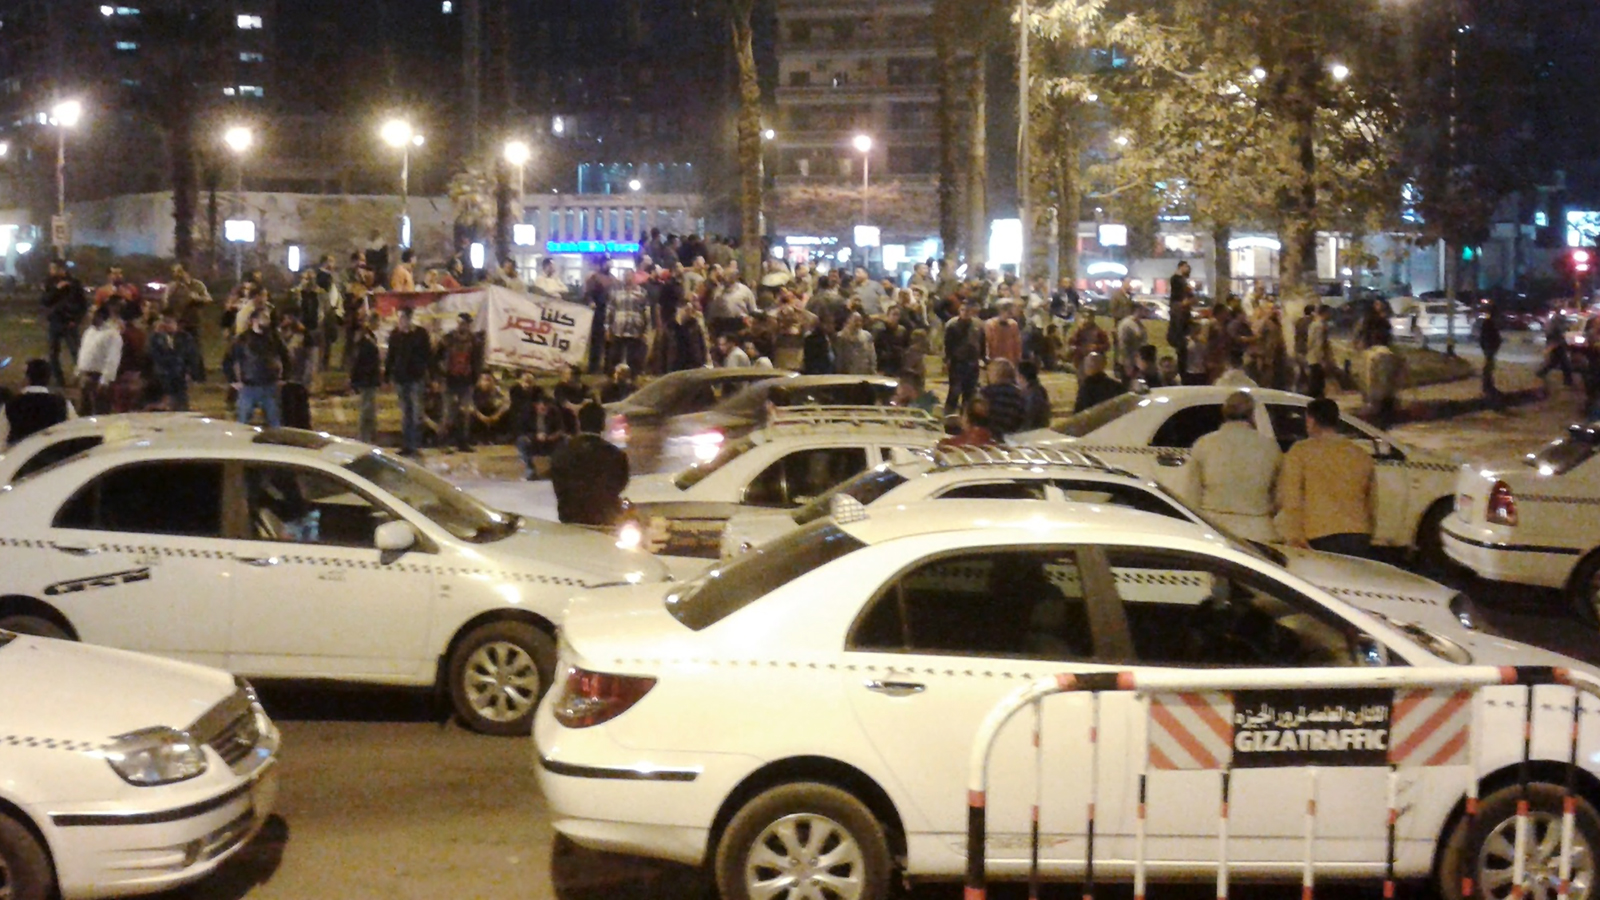 ‪مئات من سائقي التاكسي الأبيض تظاهروا بسياراتهم احتجاجا على دخول أوبر وكريم سوق التوصيل في مصر‬ (الجزيرة-أرشيف)